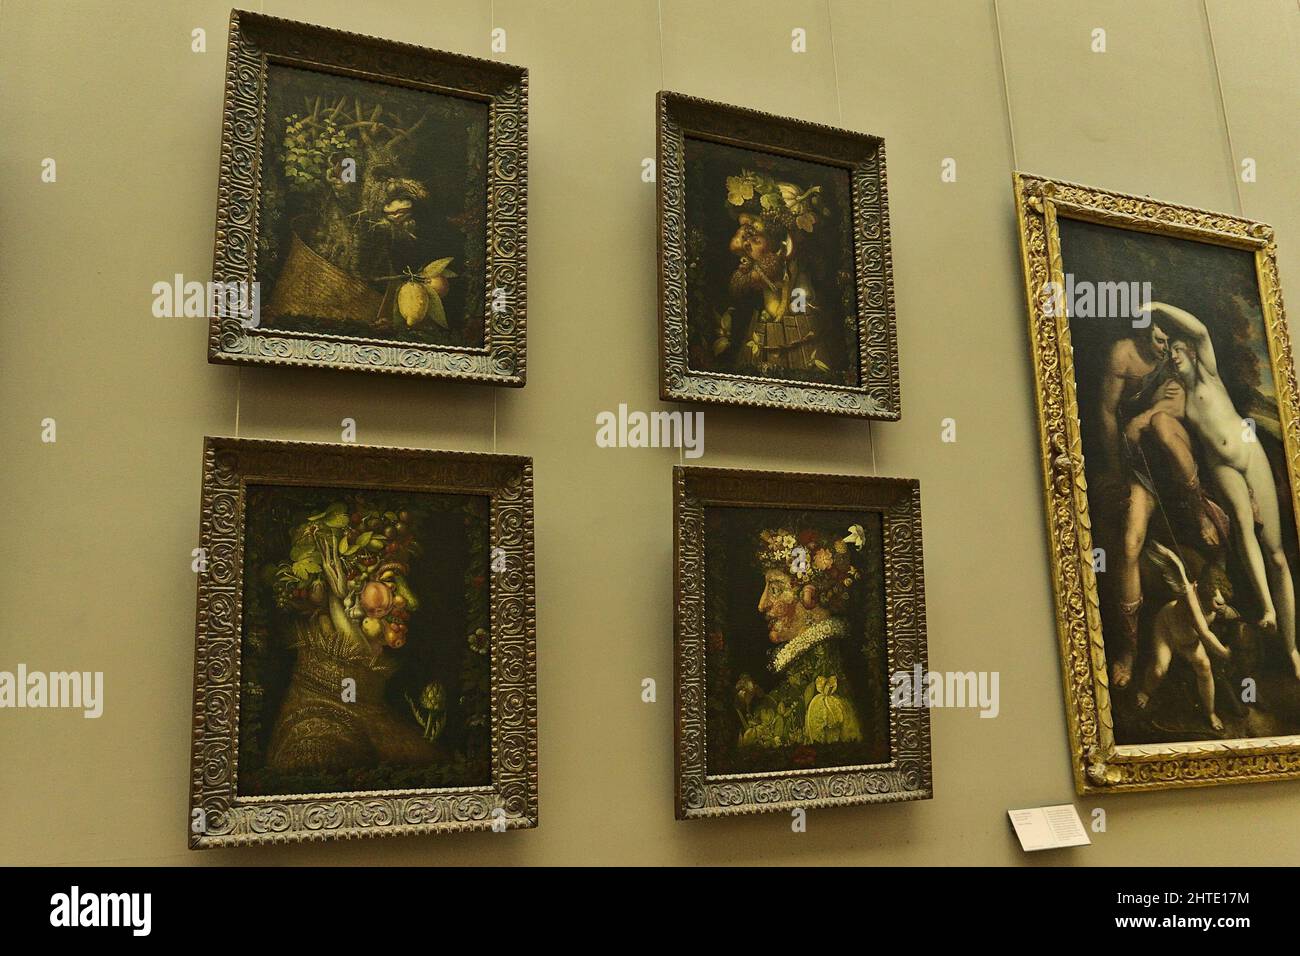 Peinture four Seasons par Giuseppe Arcimboldo au Musée du Louvre, Paris, France Banque D'Images